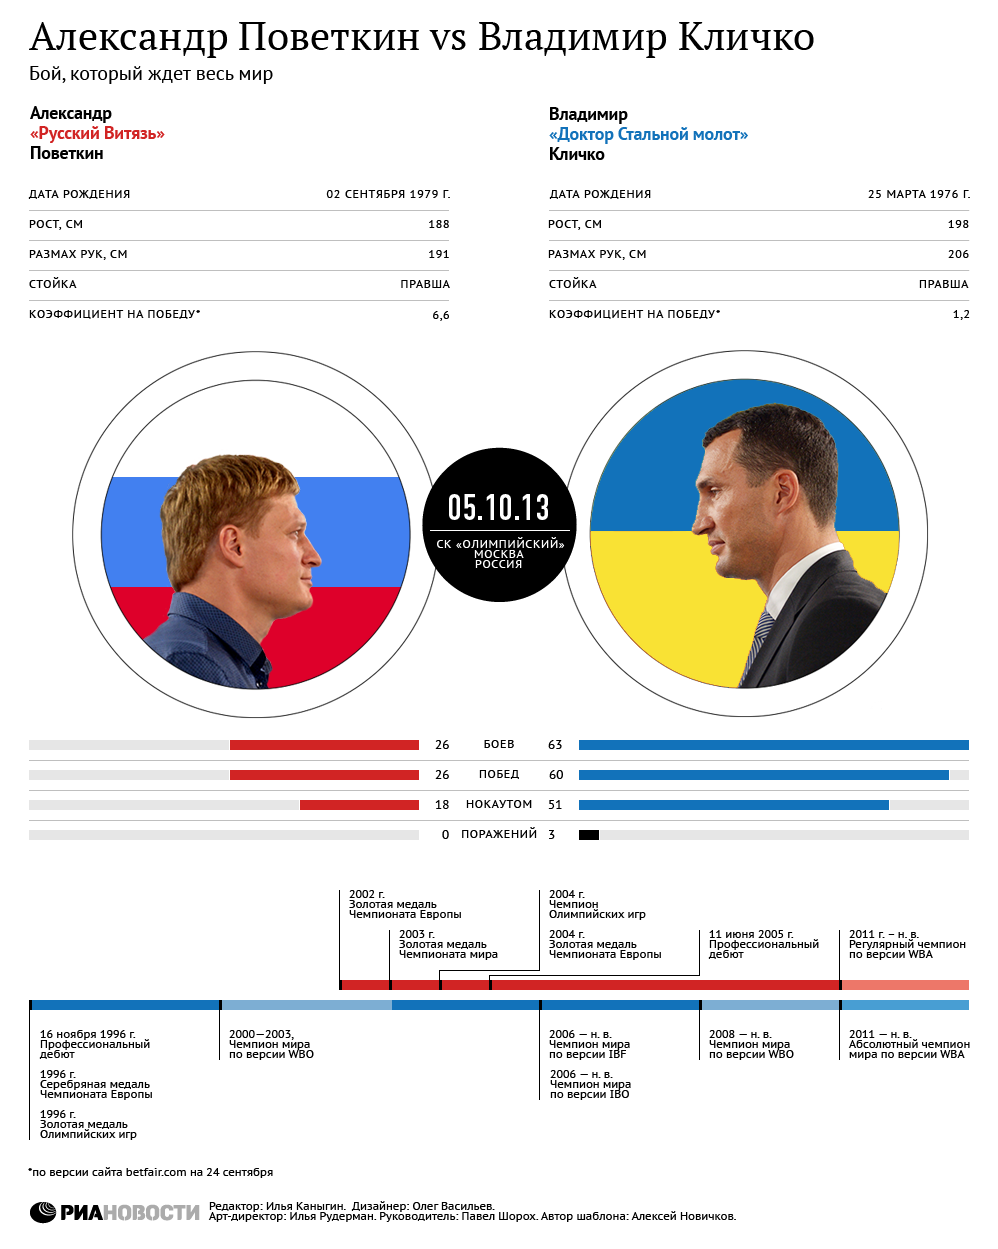 Владимир Кличко vs Александр Поветкин. Инфографика